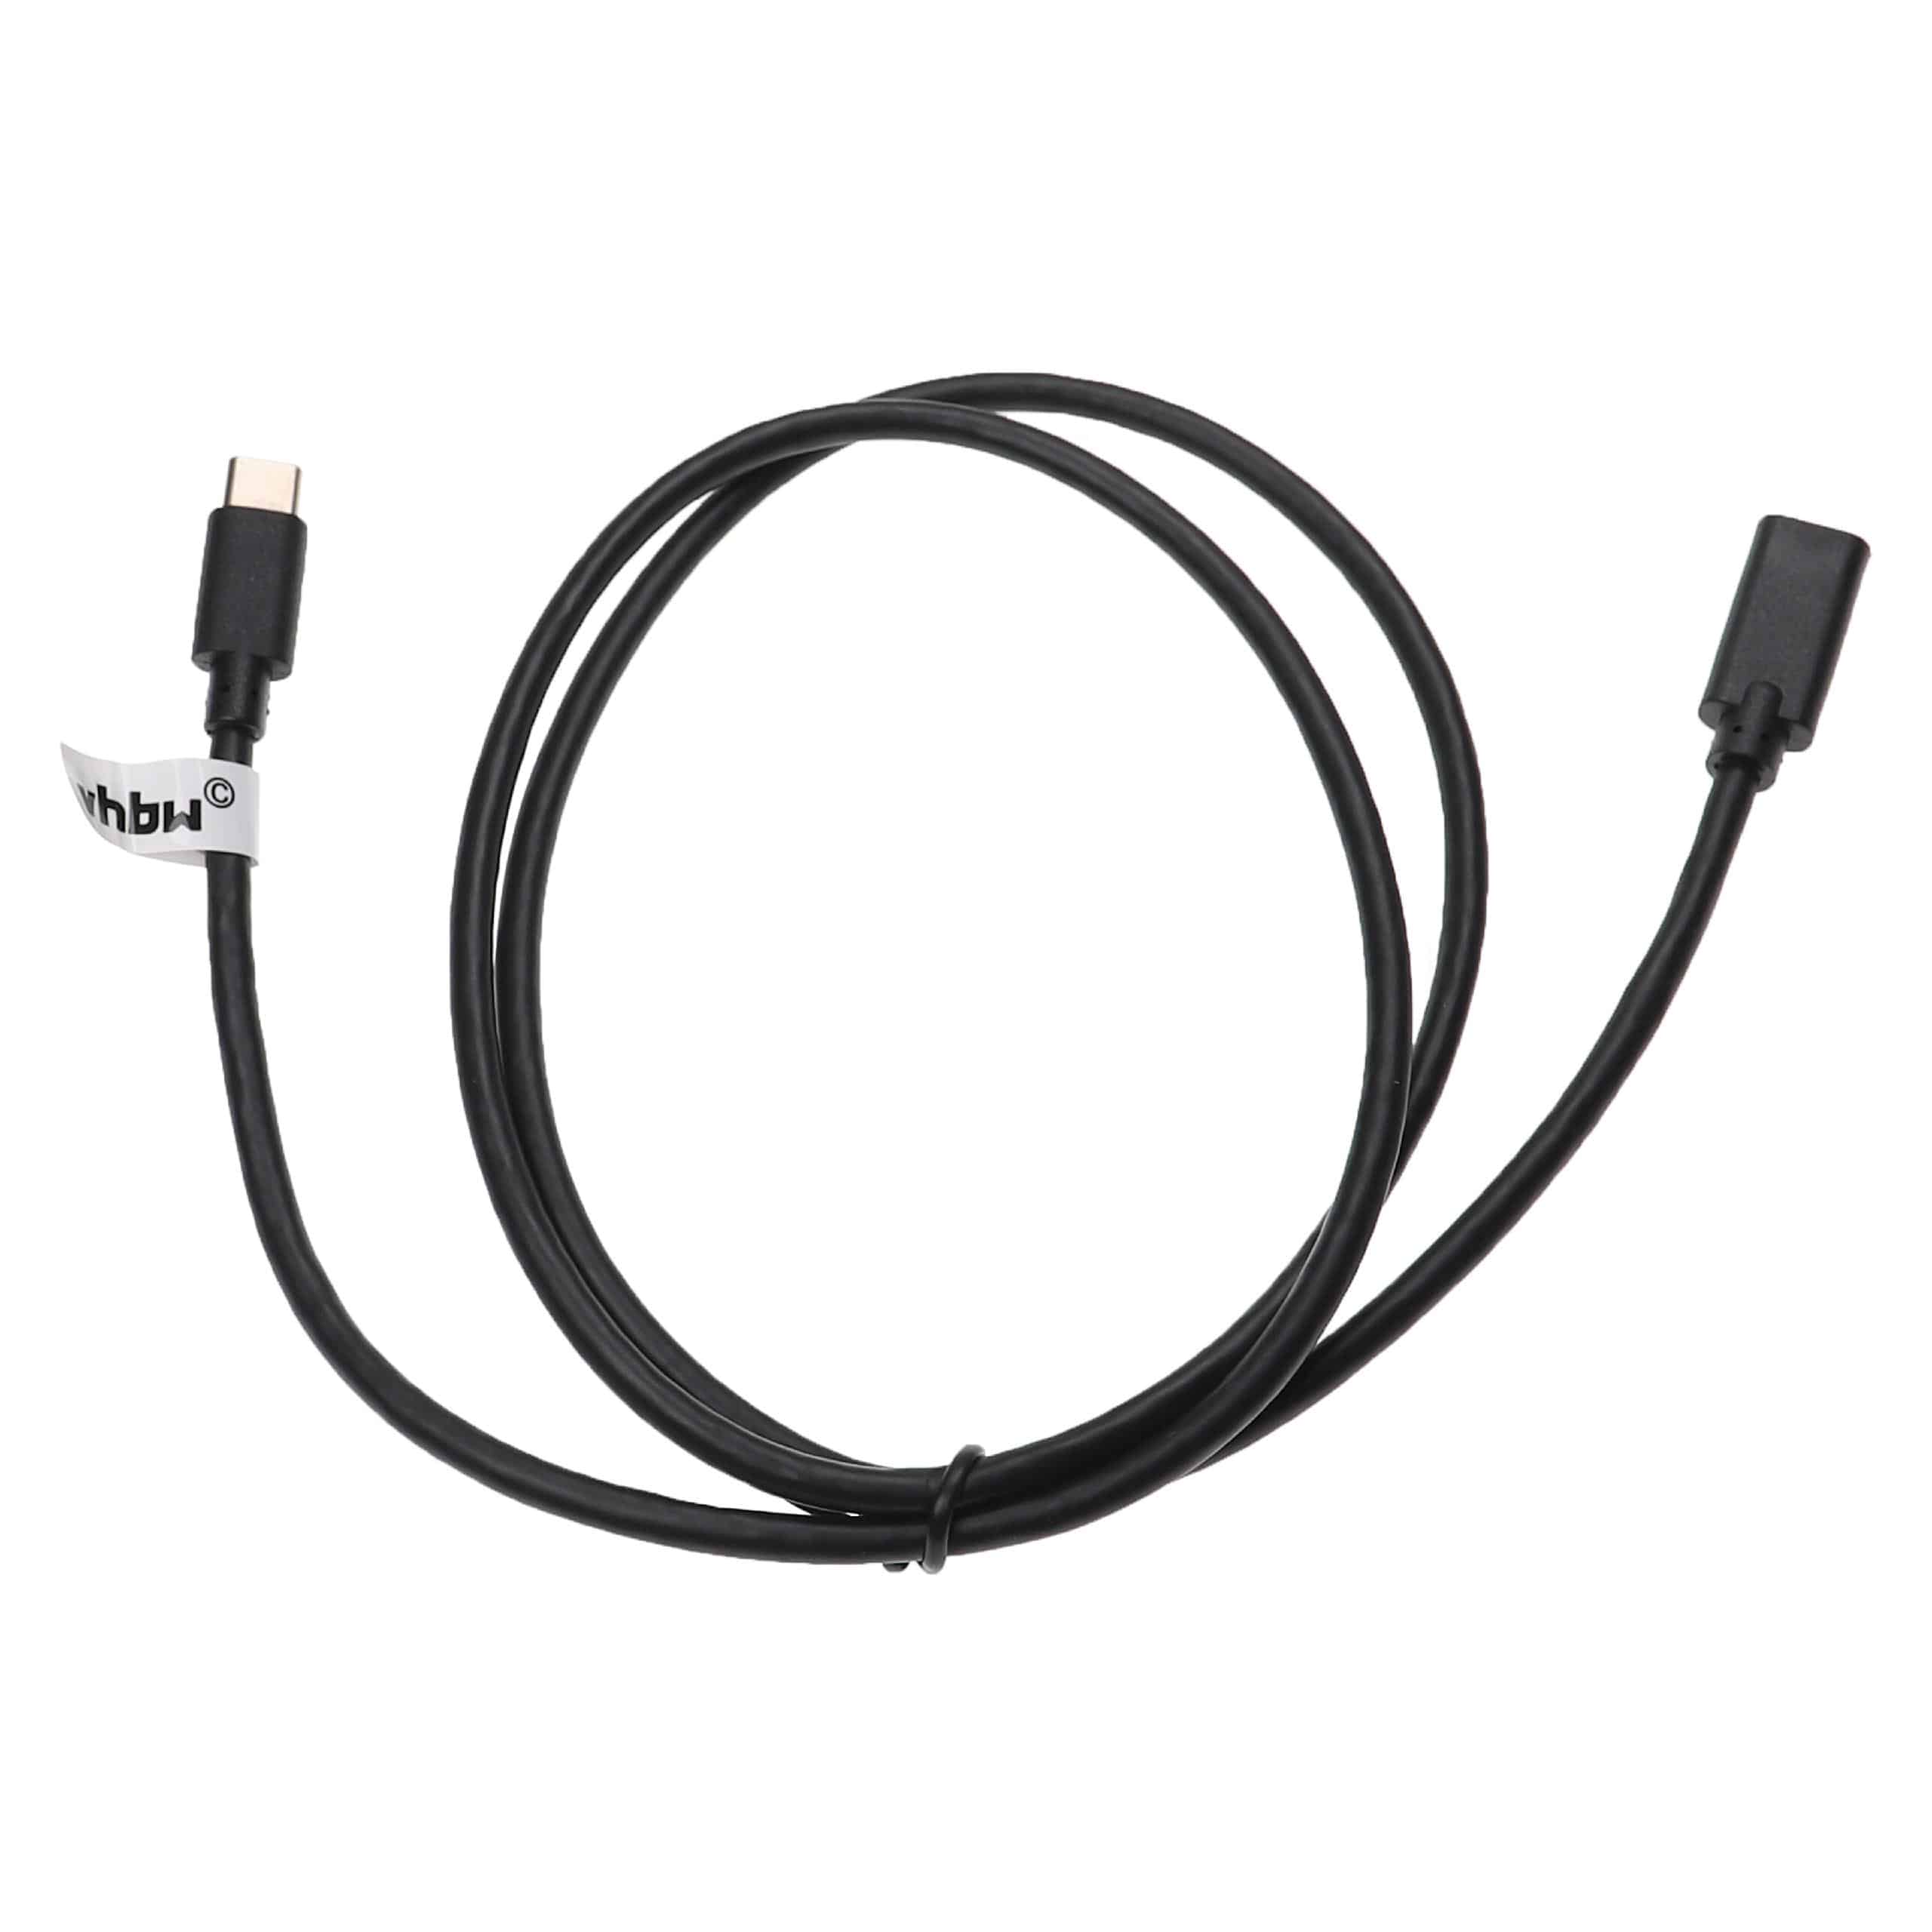 USB-C Verlängerungskabel für diverse Notebooks, Smartphones, Tablets, PCs - 1 m Schwarz, USB 3.1 C Kabel